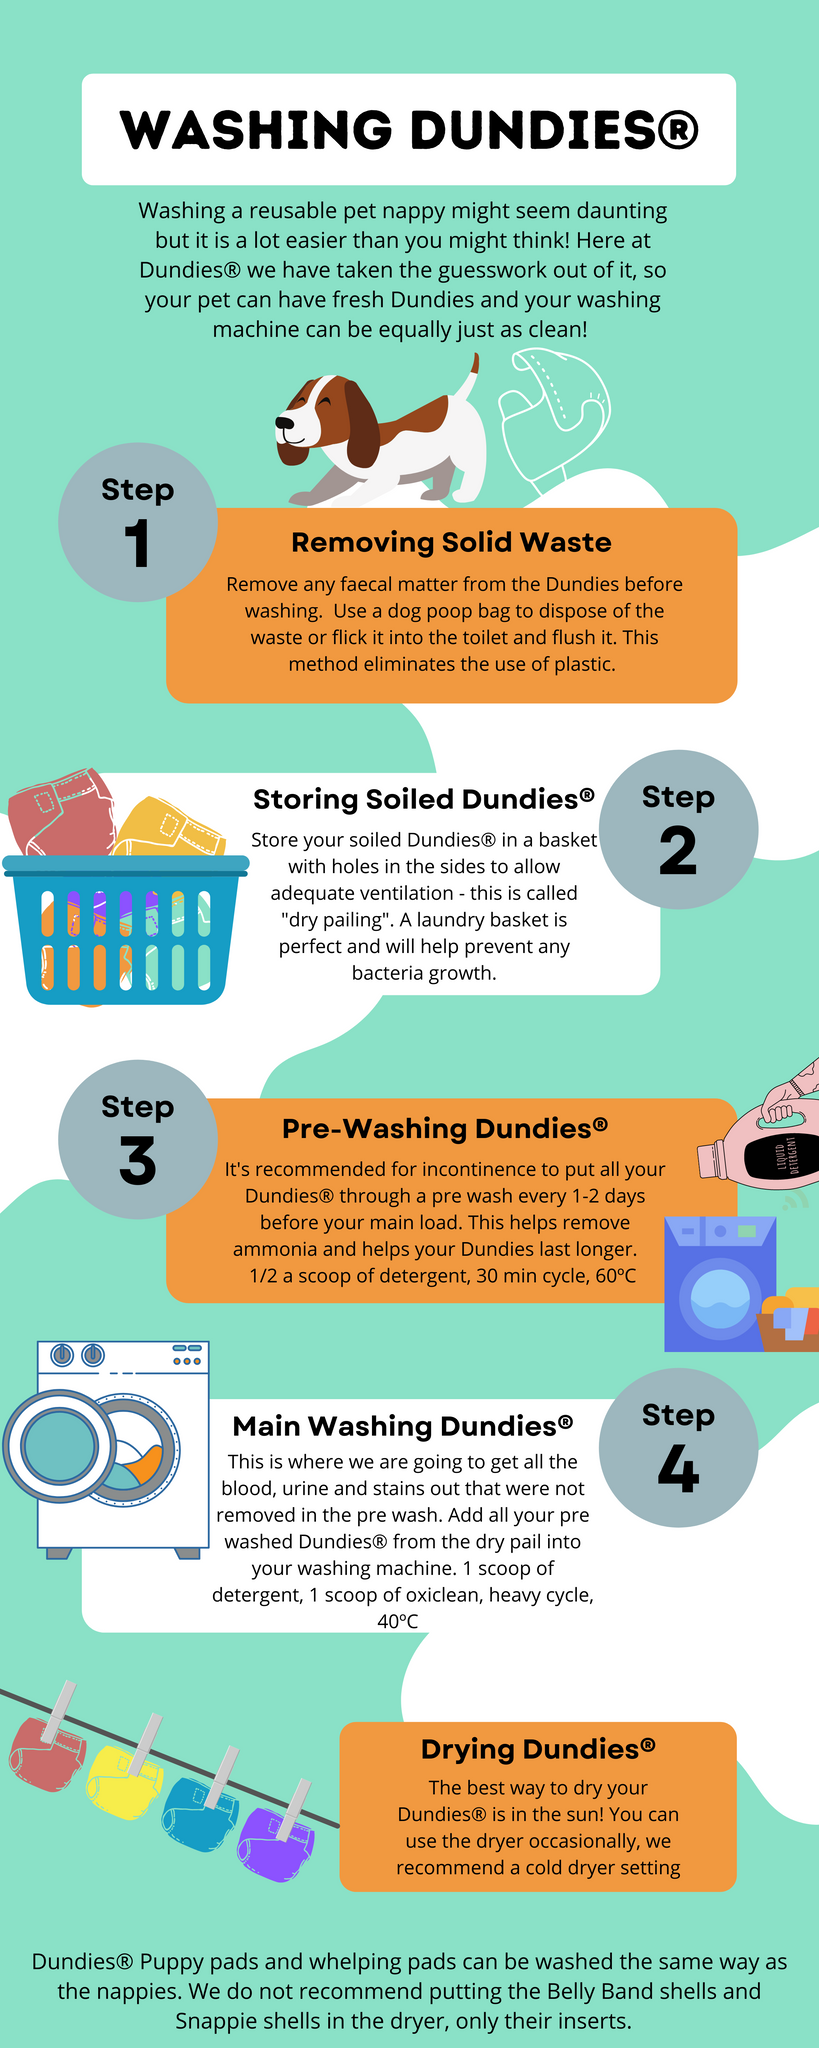 Dundies Washing Guide 